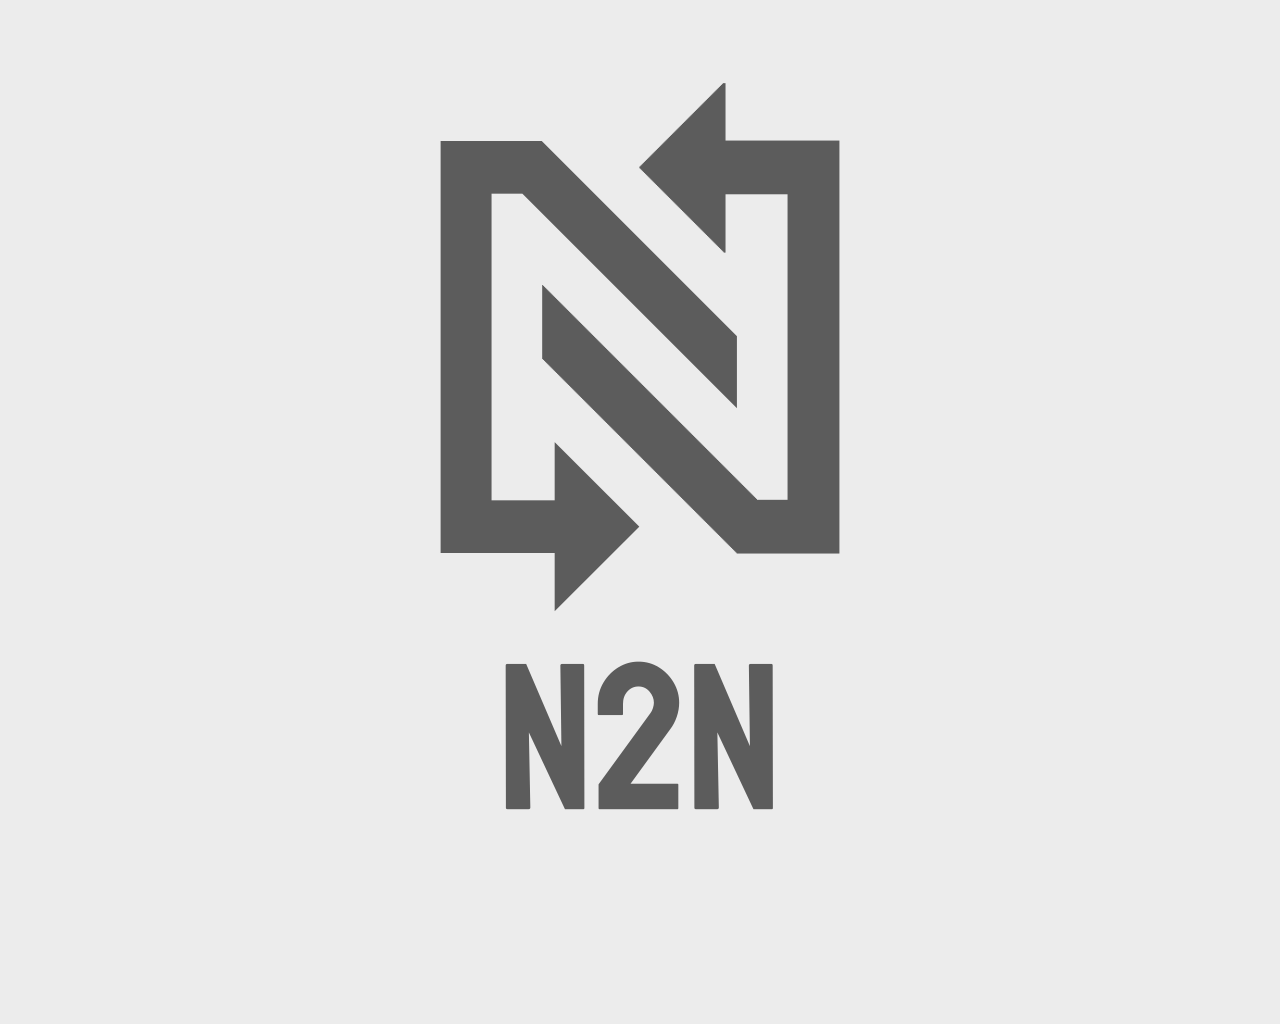 N2N